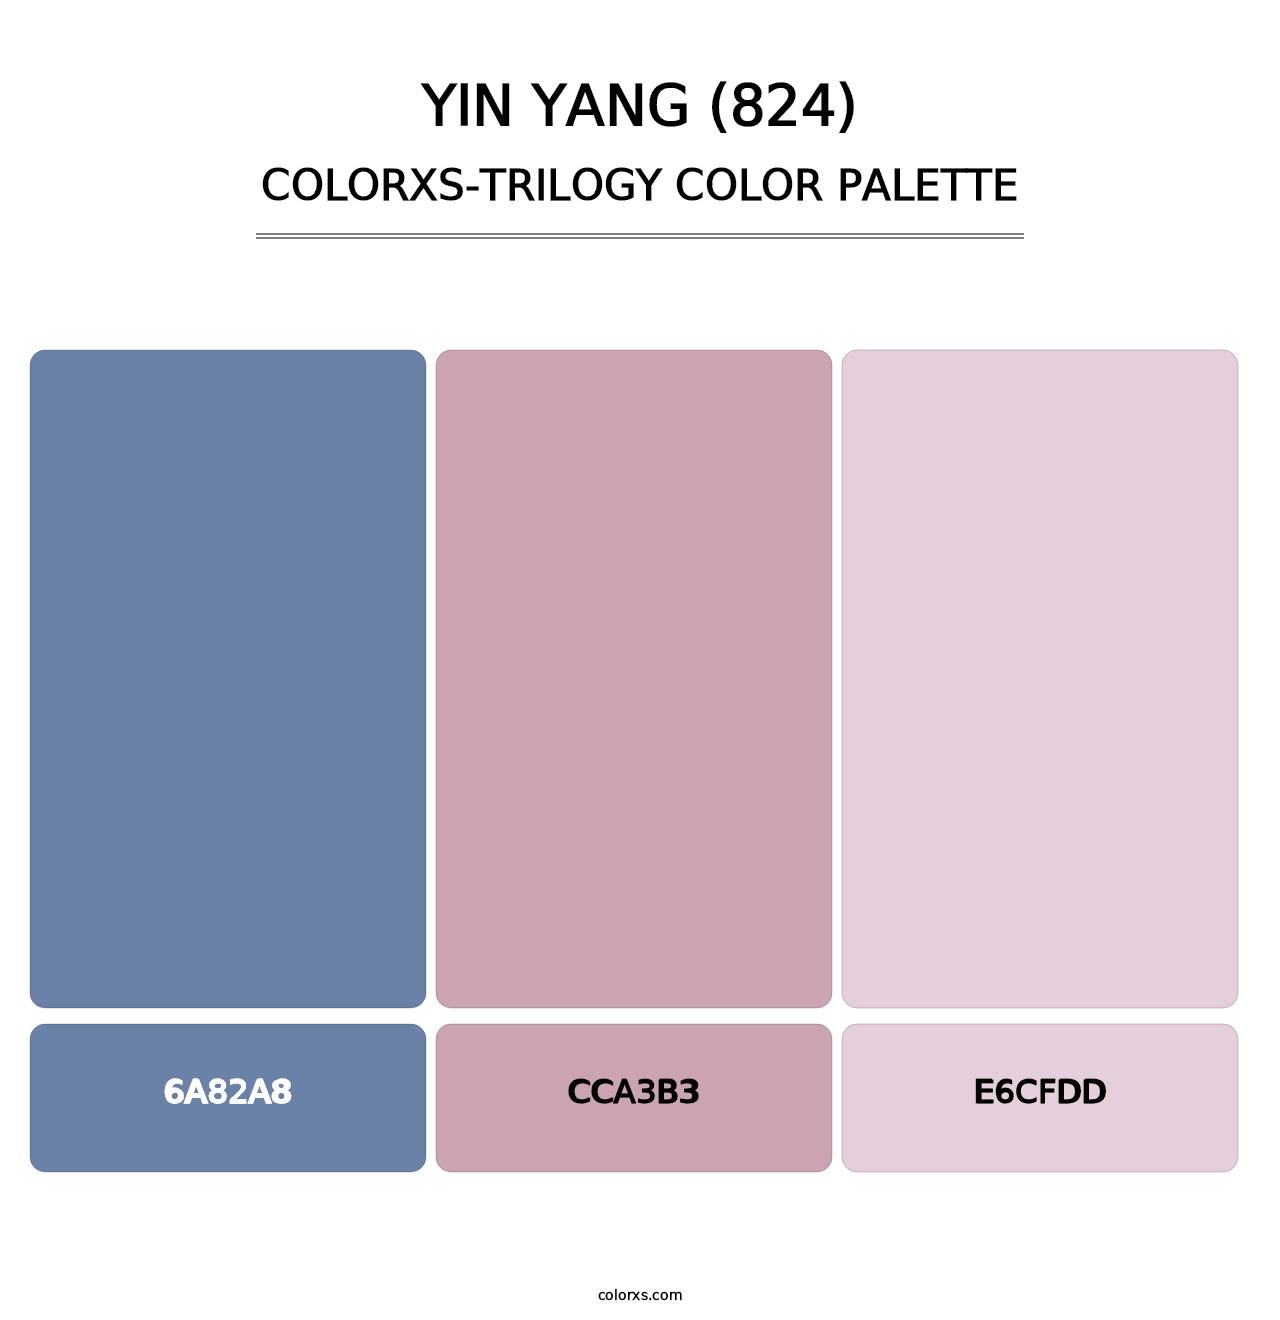 Yin Yang (824) - Colorxs Trilogy Palette